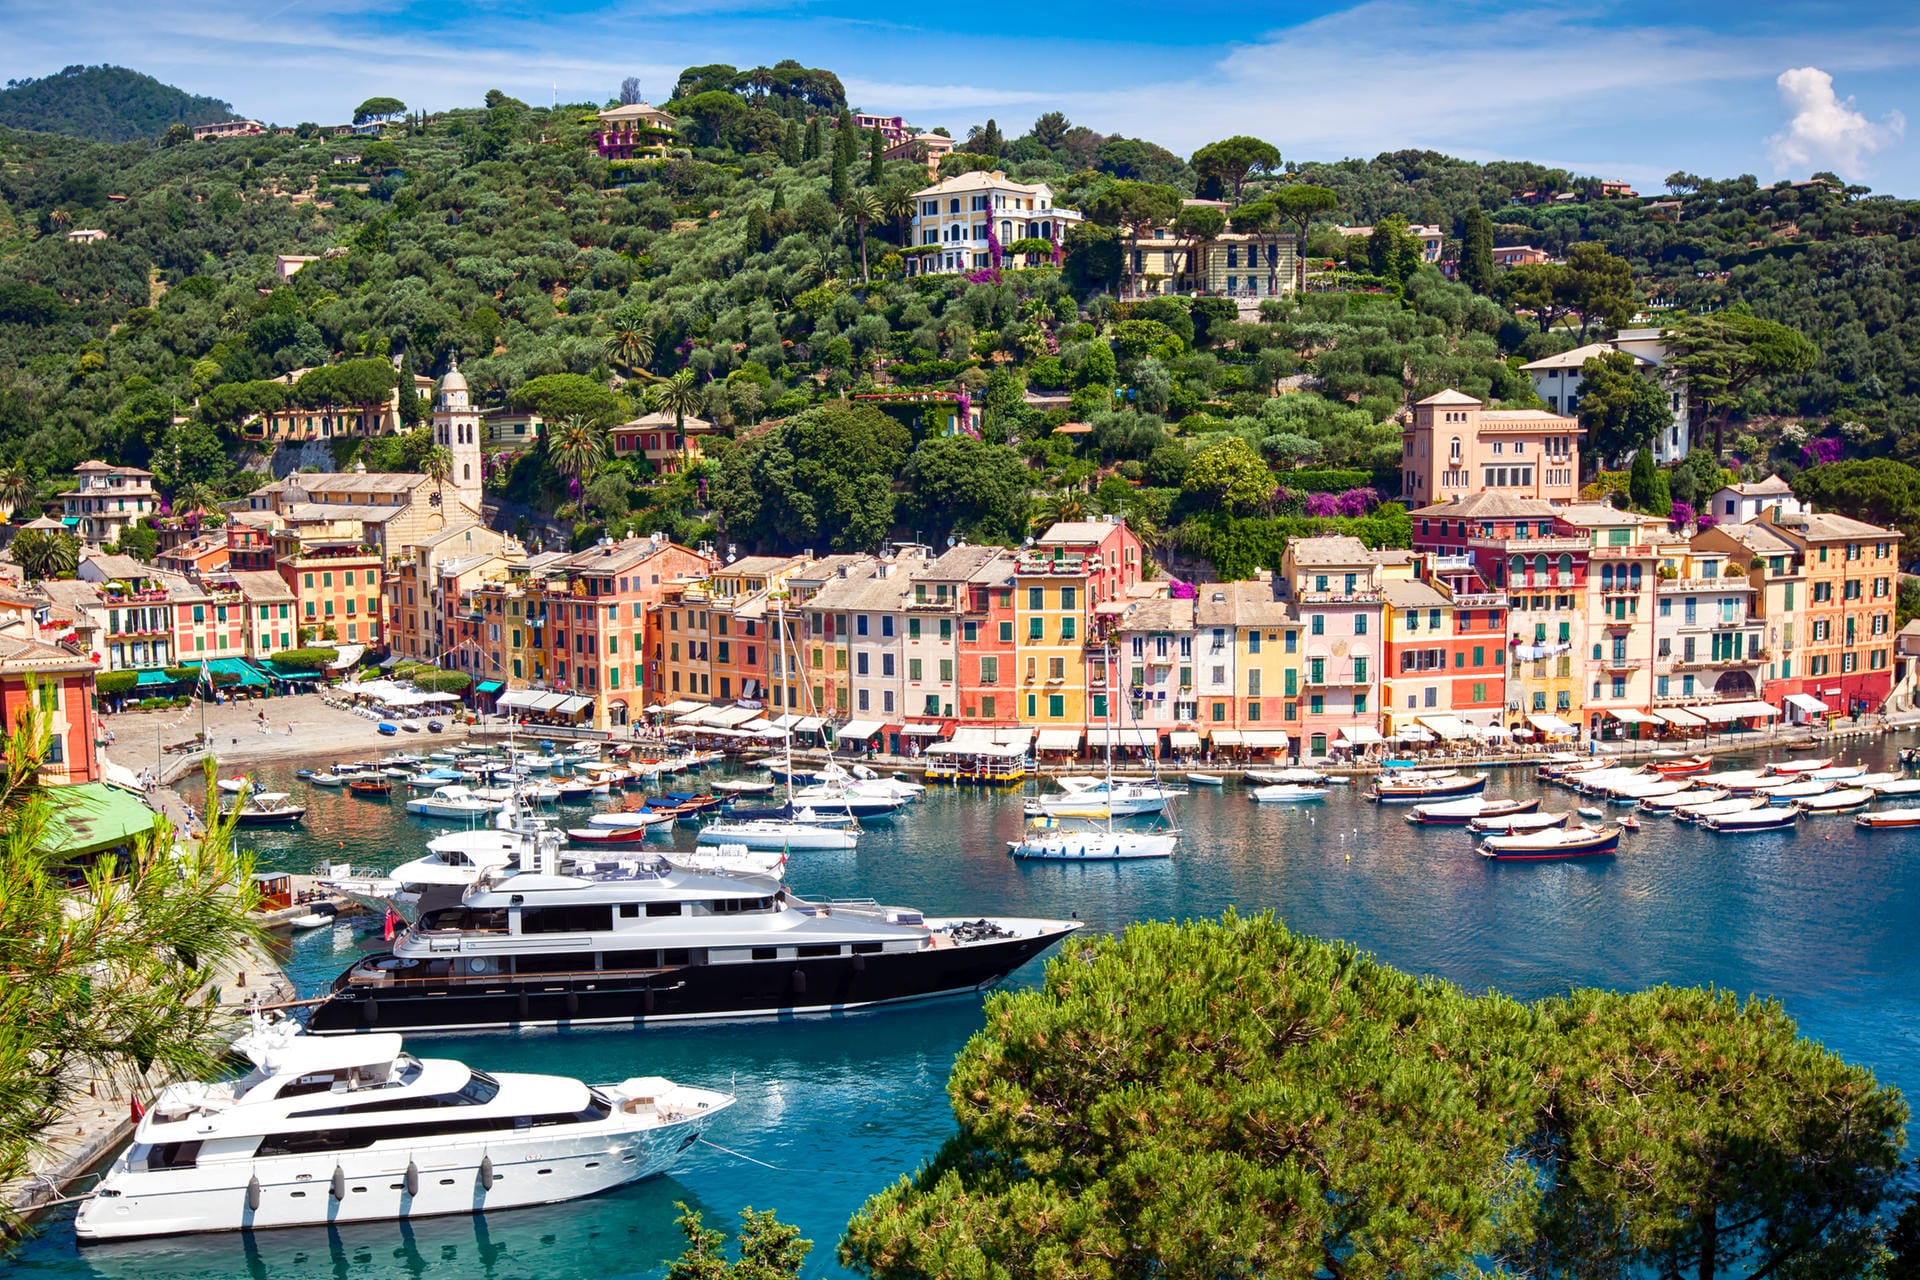 Diesen kleinen Ort lieben Milliardäre ebenso wie Prominente: Portofino an der ligurischen Küste hat nur 500 Einwohner, aber eine Marina, in der Eigner von Luxusjachten knapp 3000 Euro pro Nacht zum Festmachen zahlen.